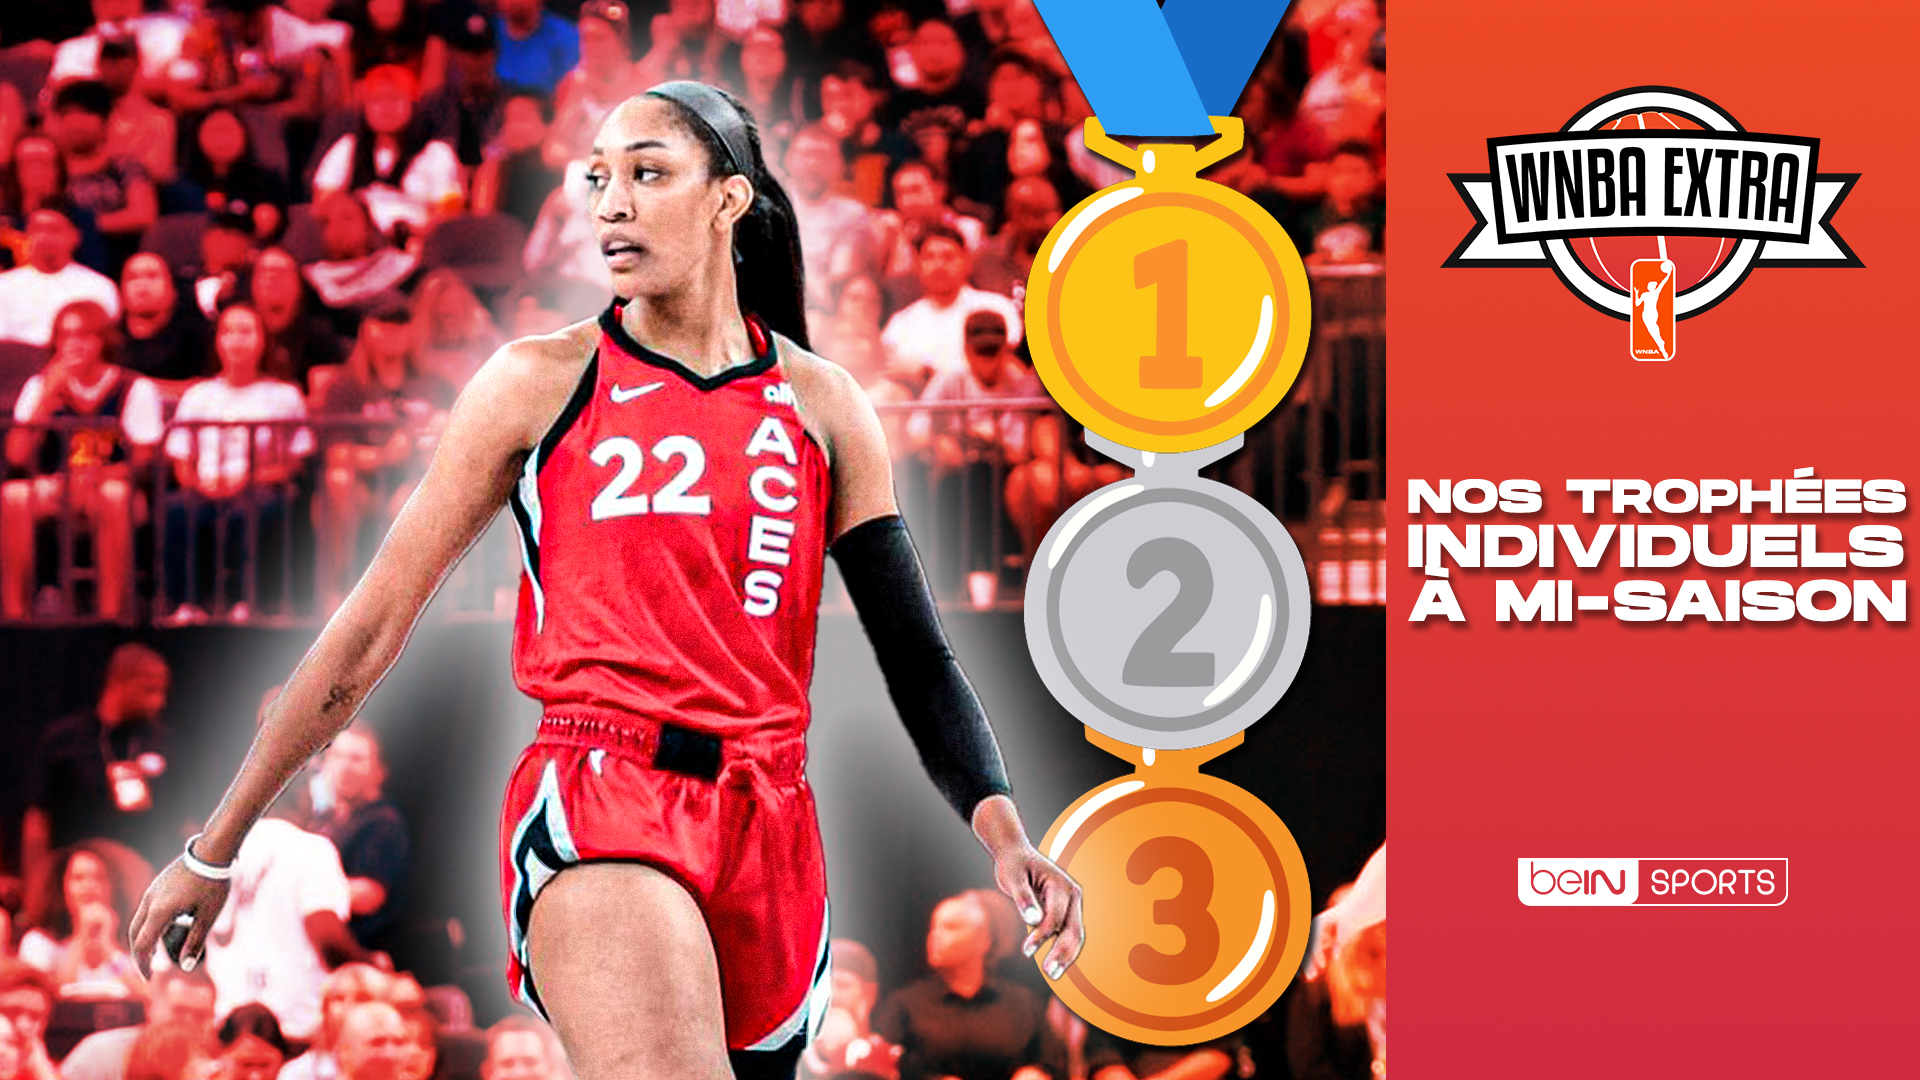  WNBAextra : Nos trophées individuels à mi-saison !